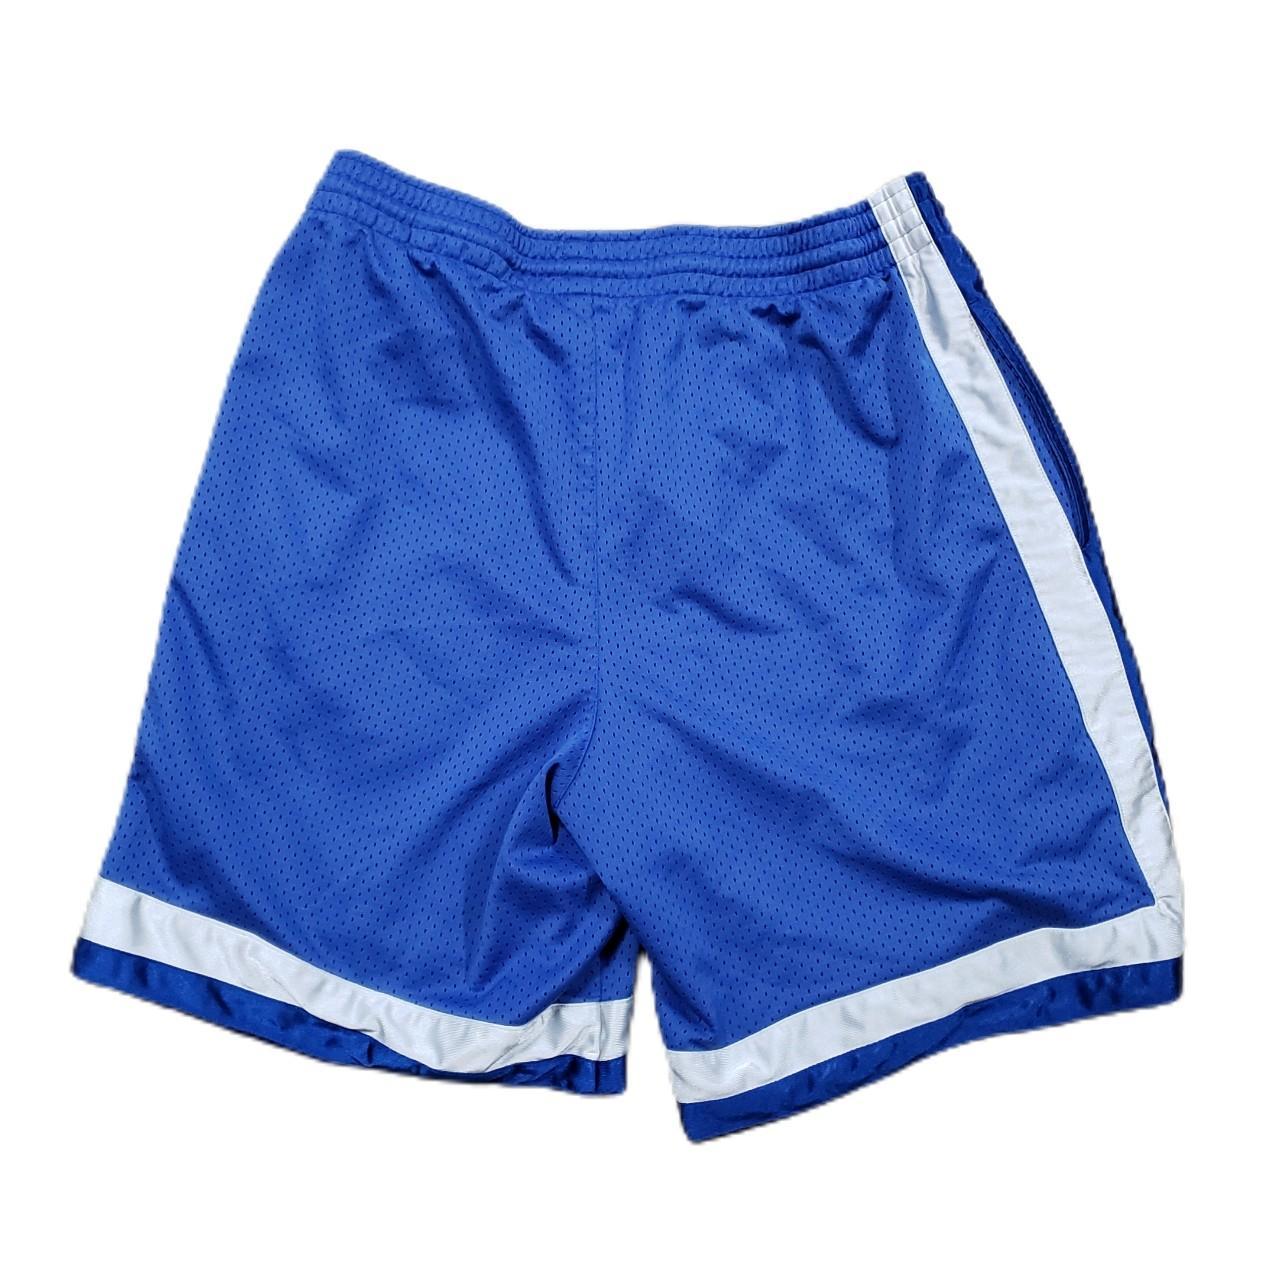 Product Image 3 - Men's Y2K Nike Shorts 

Size: